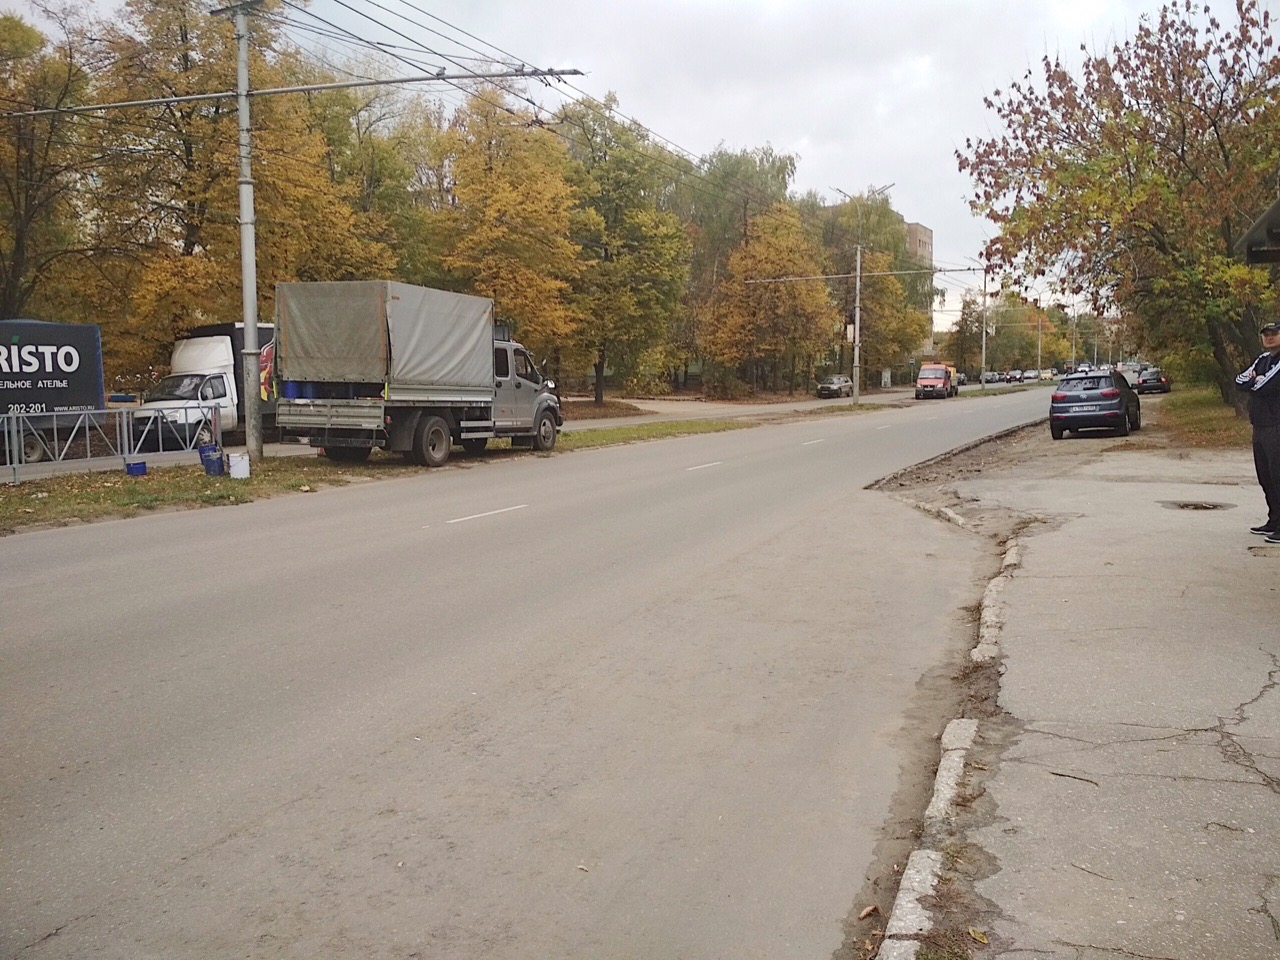 "До пешеходного перехода идти километр" - жители поселка Шлаковый недовольны дорожным ограждением